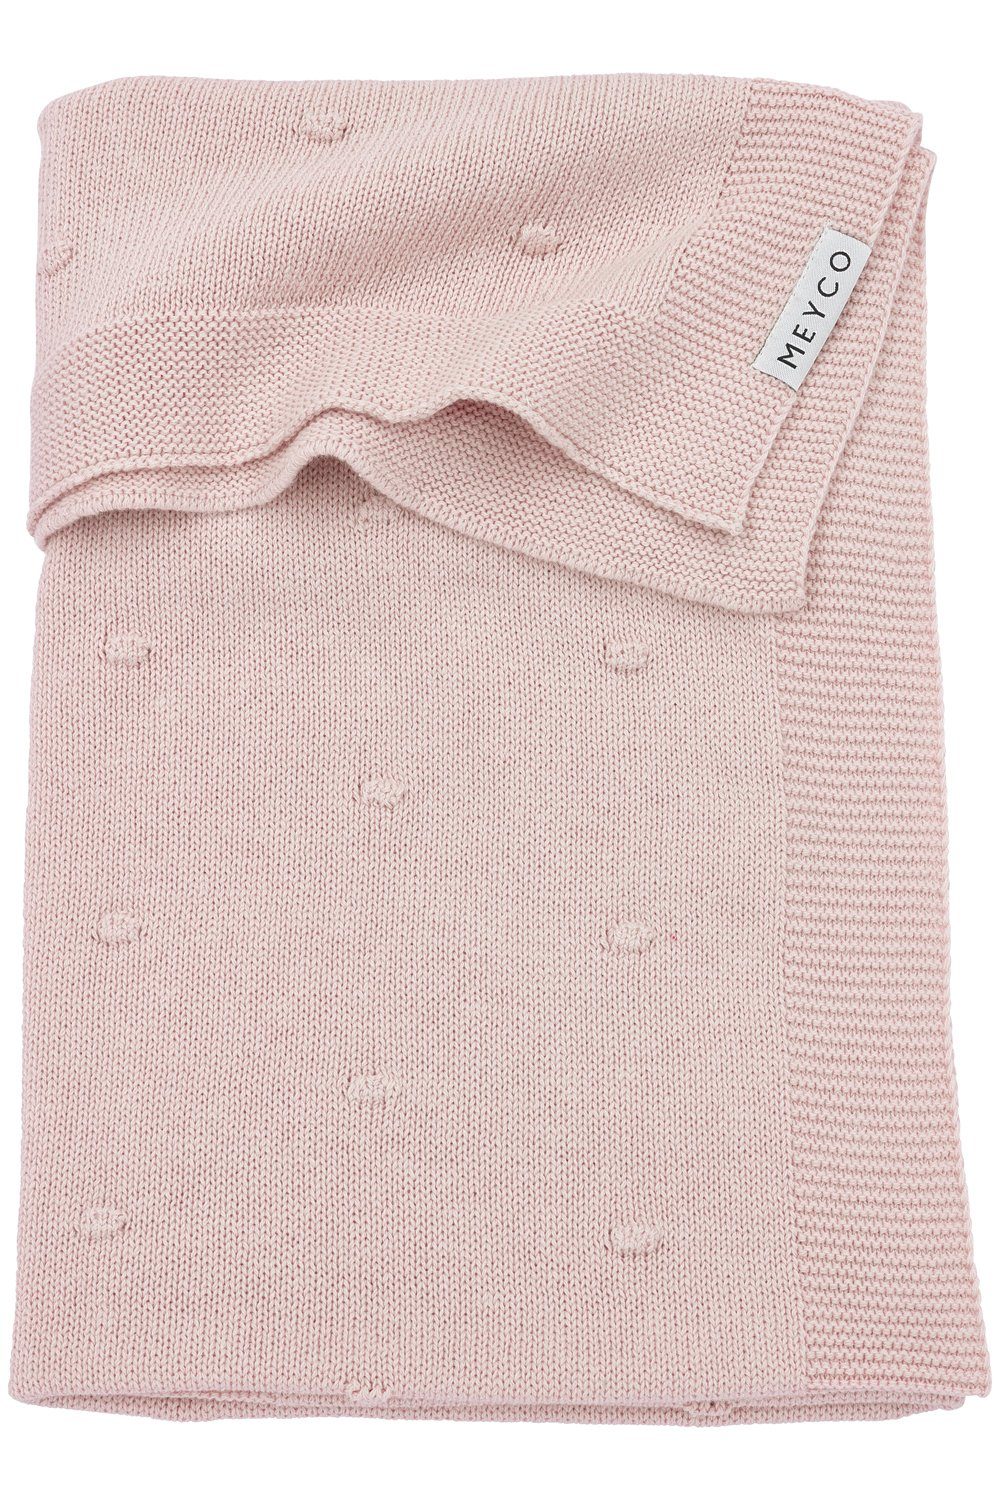 Babydecke Mini Knots Soft Pink, Meyco Baby, 75x100cm